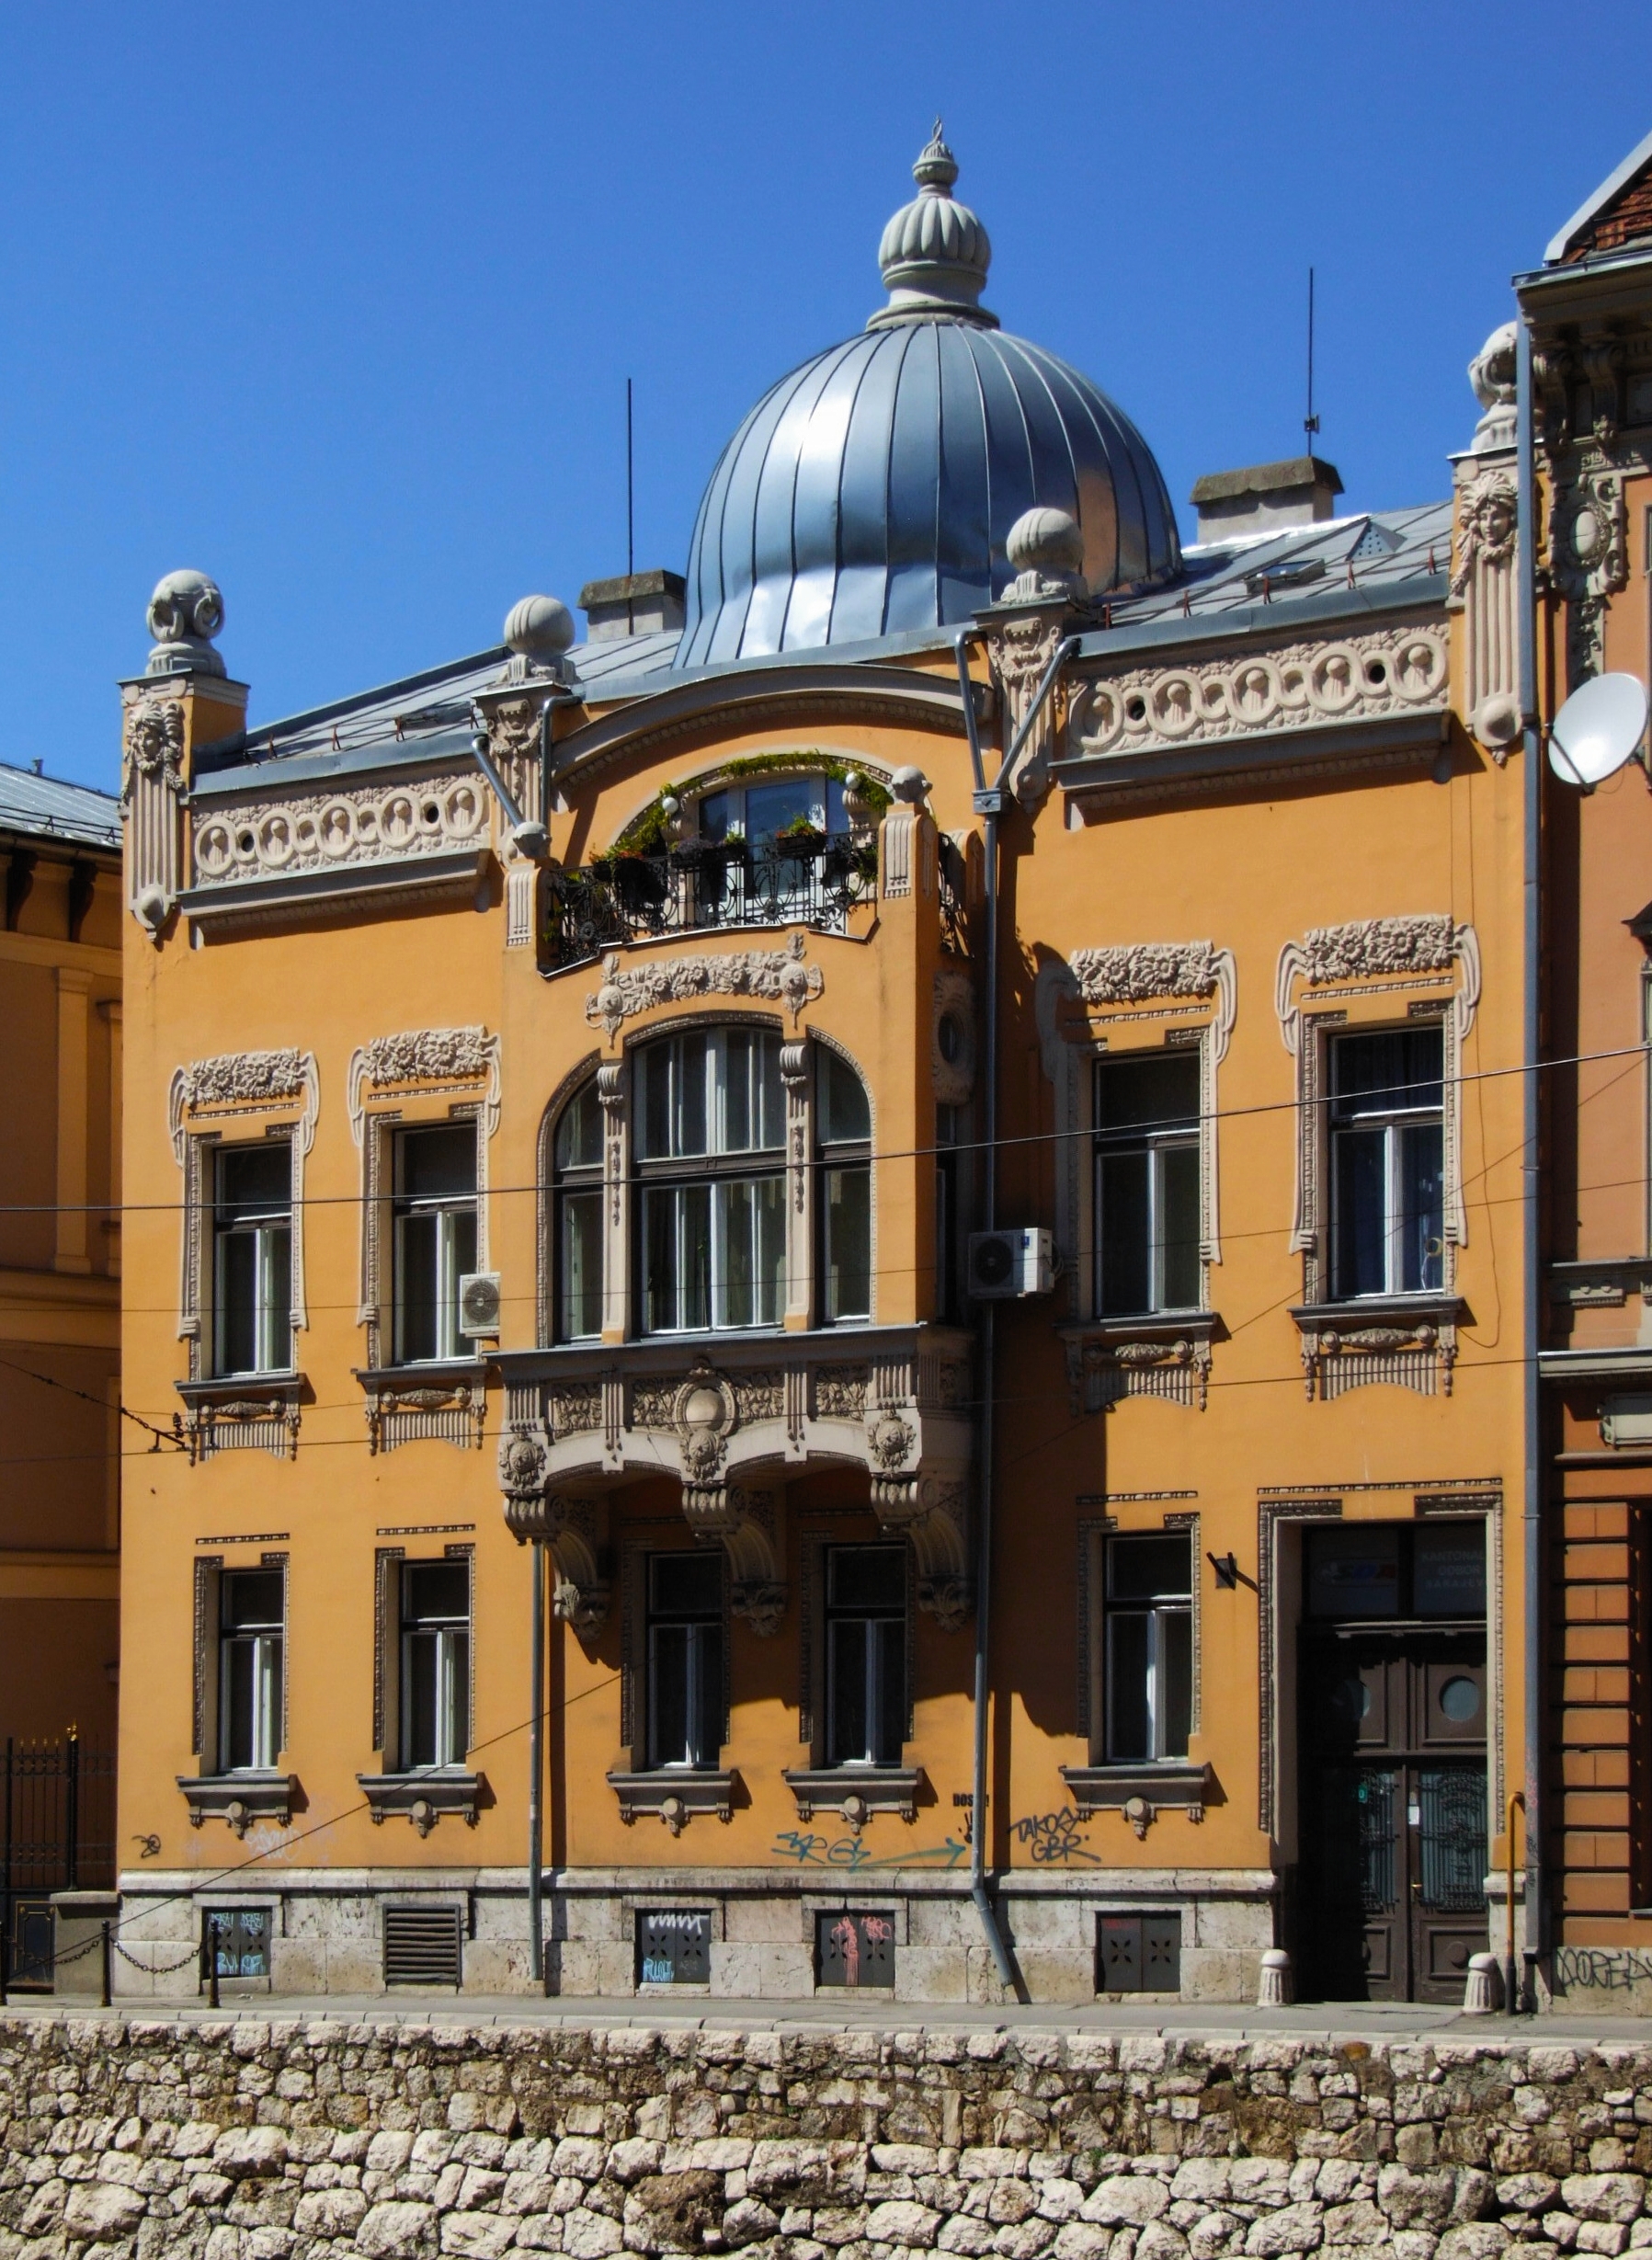 Sarajevo - Art Nouveau building